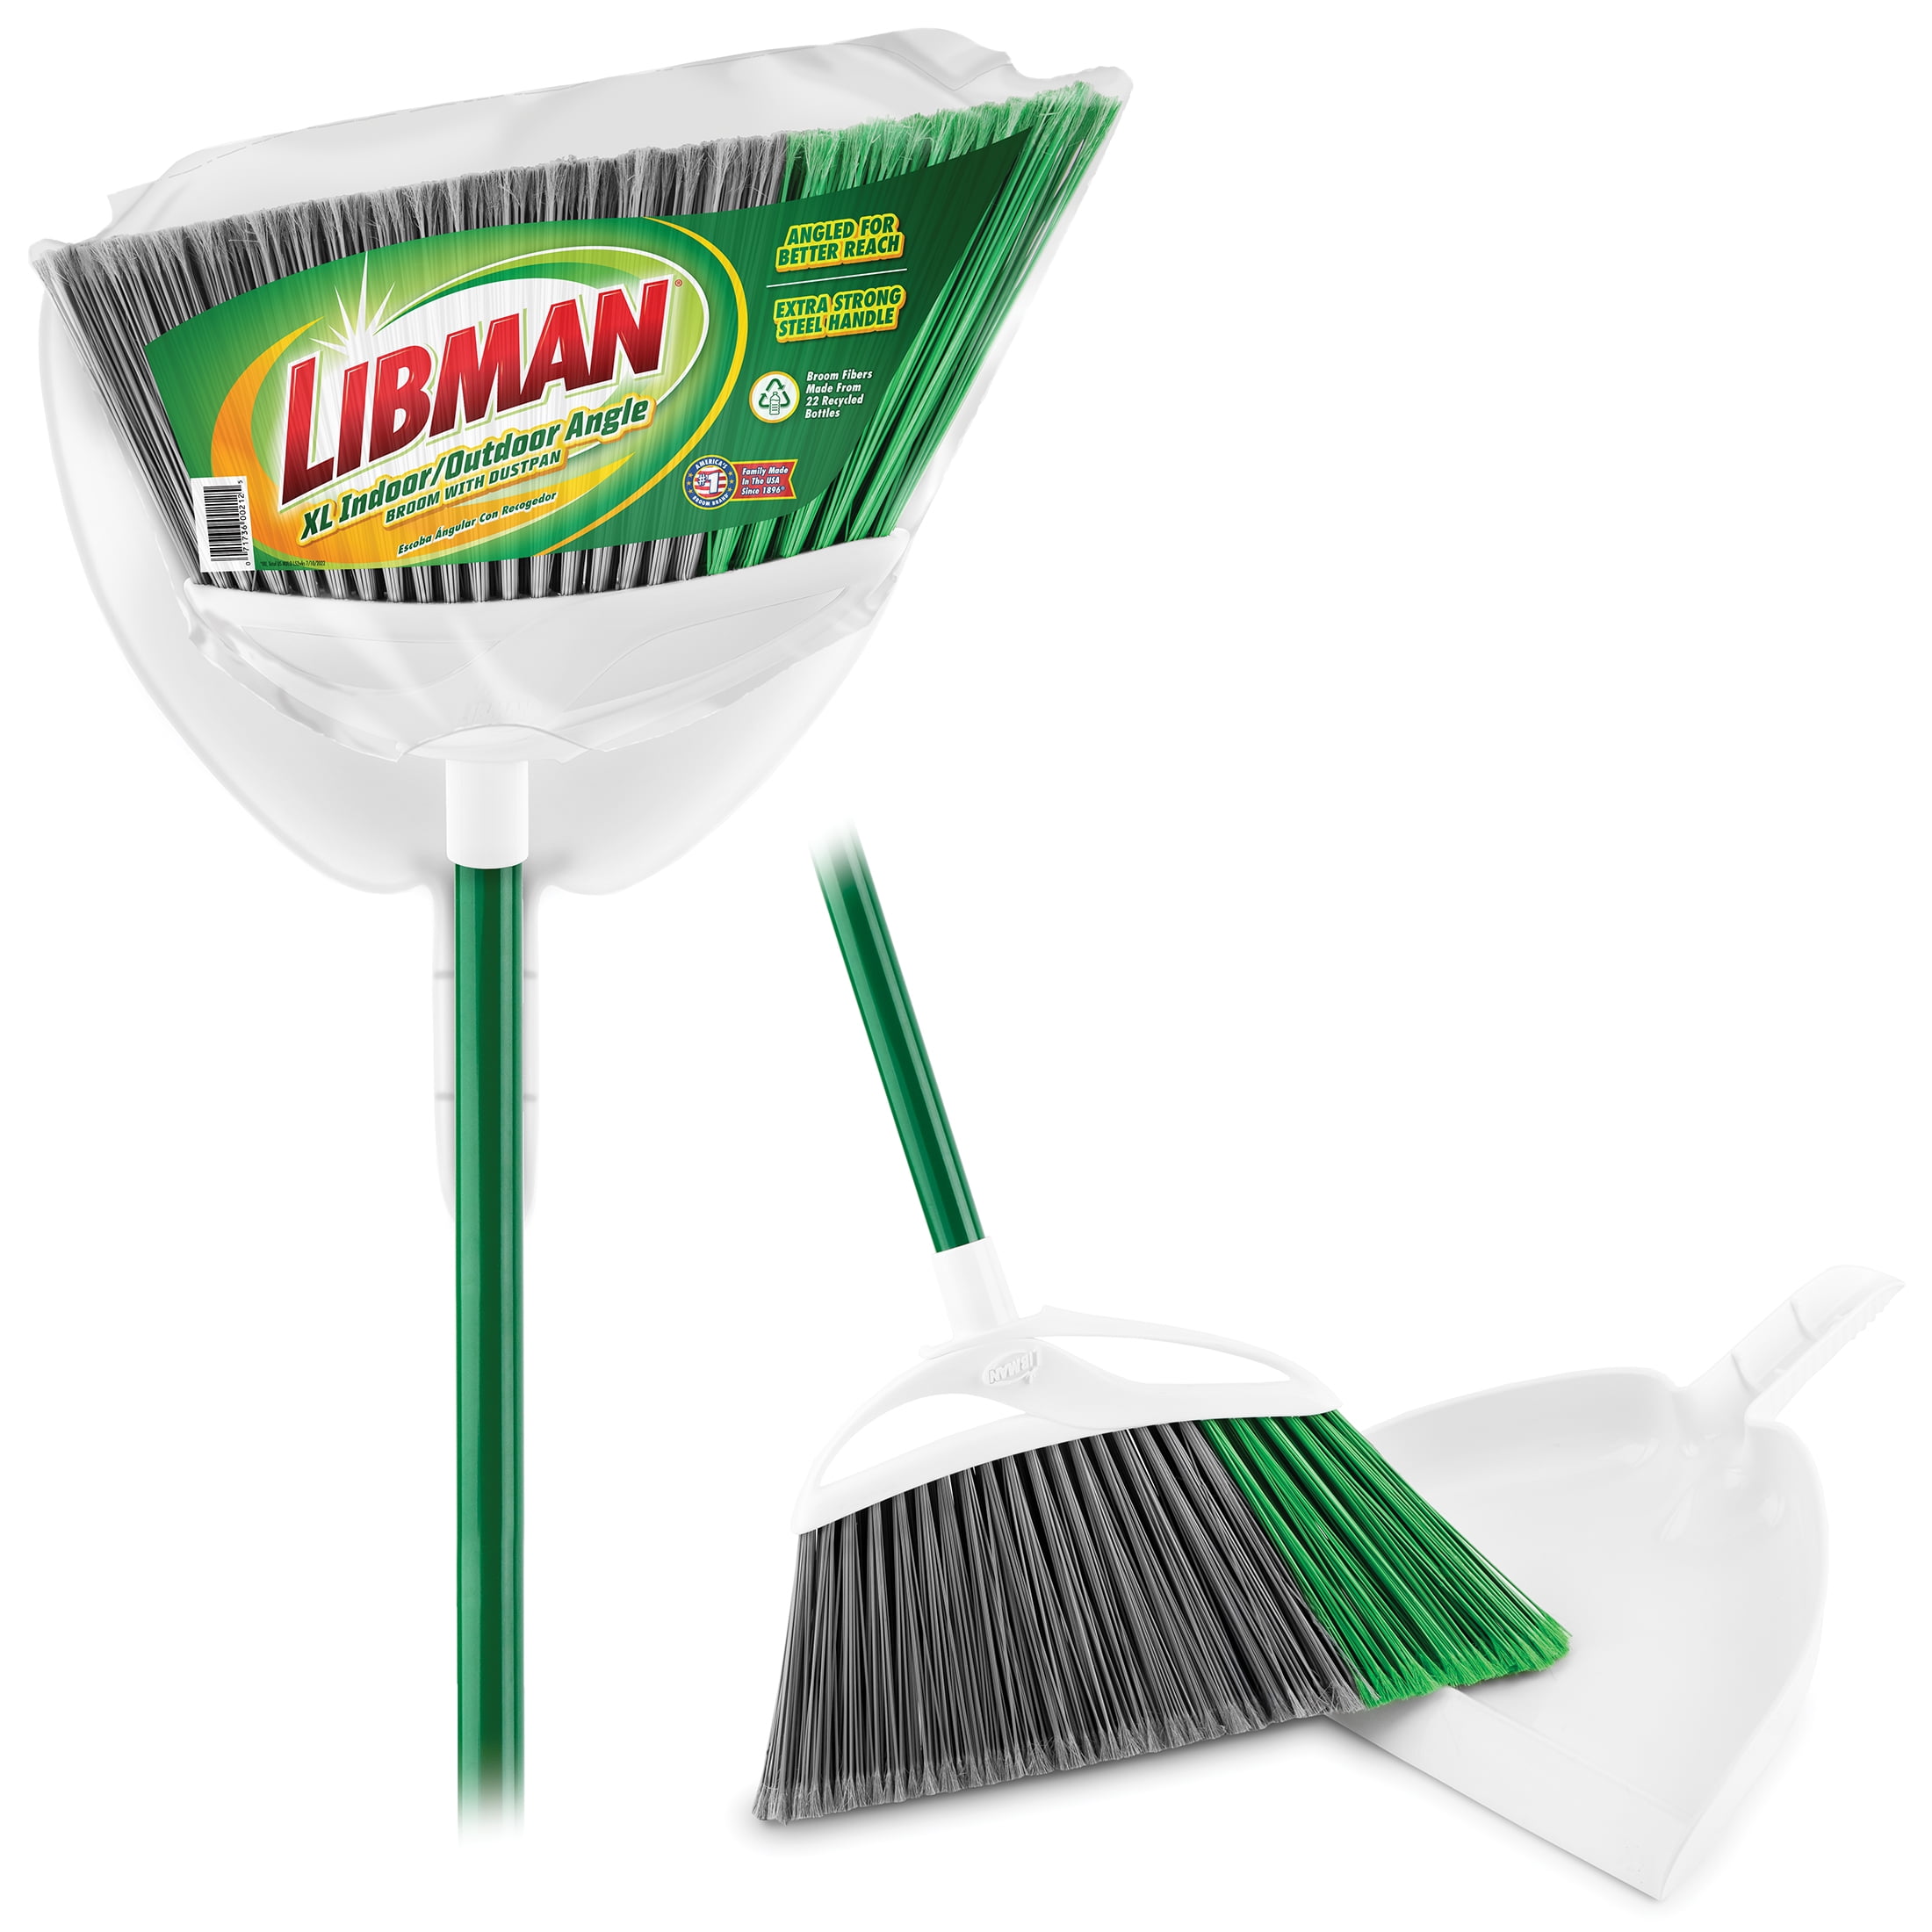 Libman Shaped Duster Brush